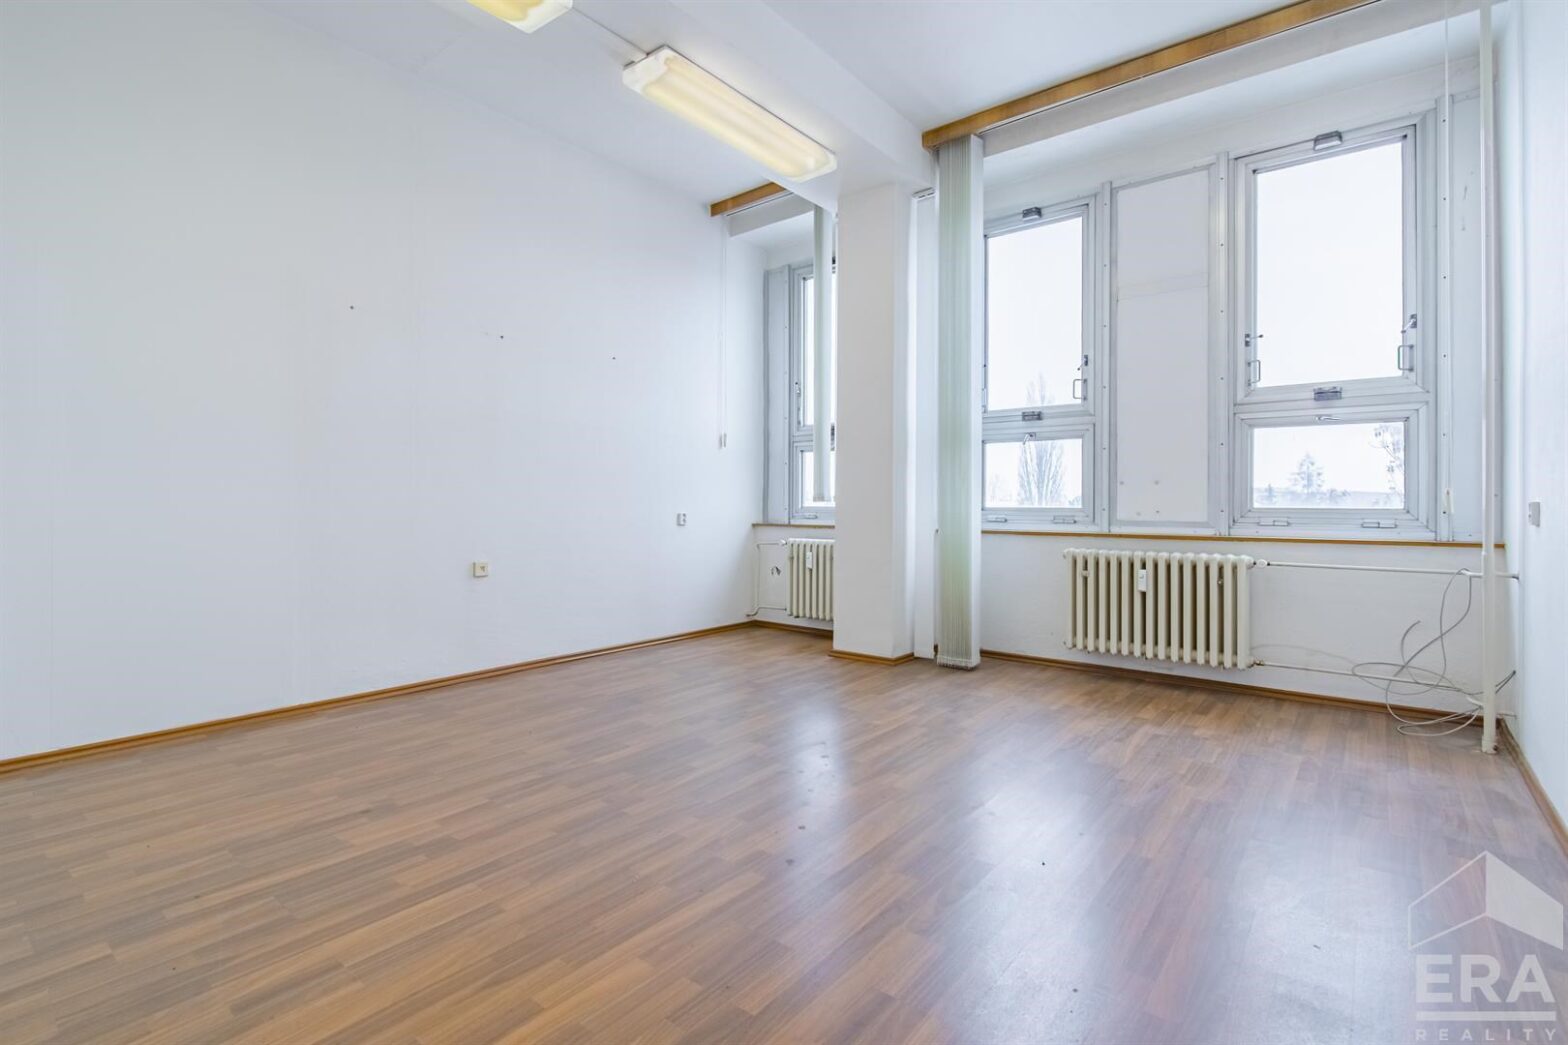 Pronájem kancelářského prostoru – tři místnosti, celkem 41,53 m2